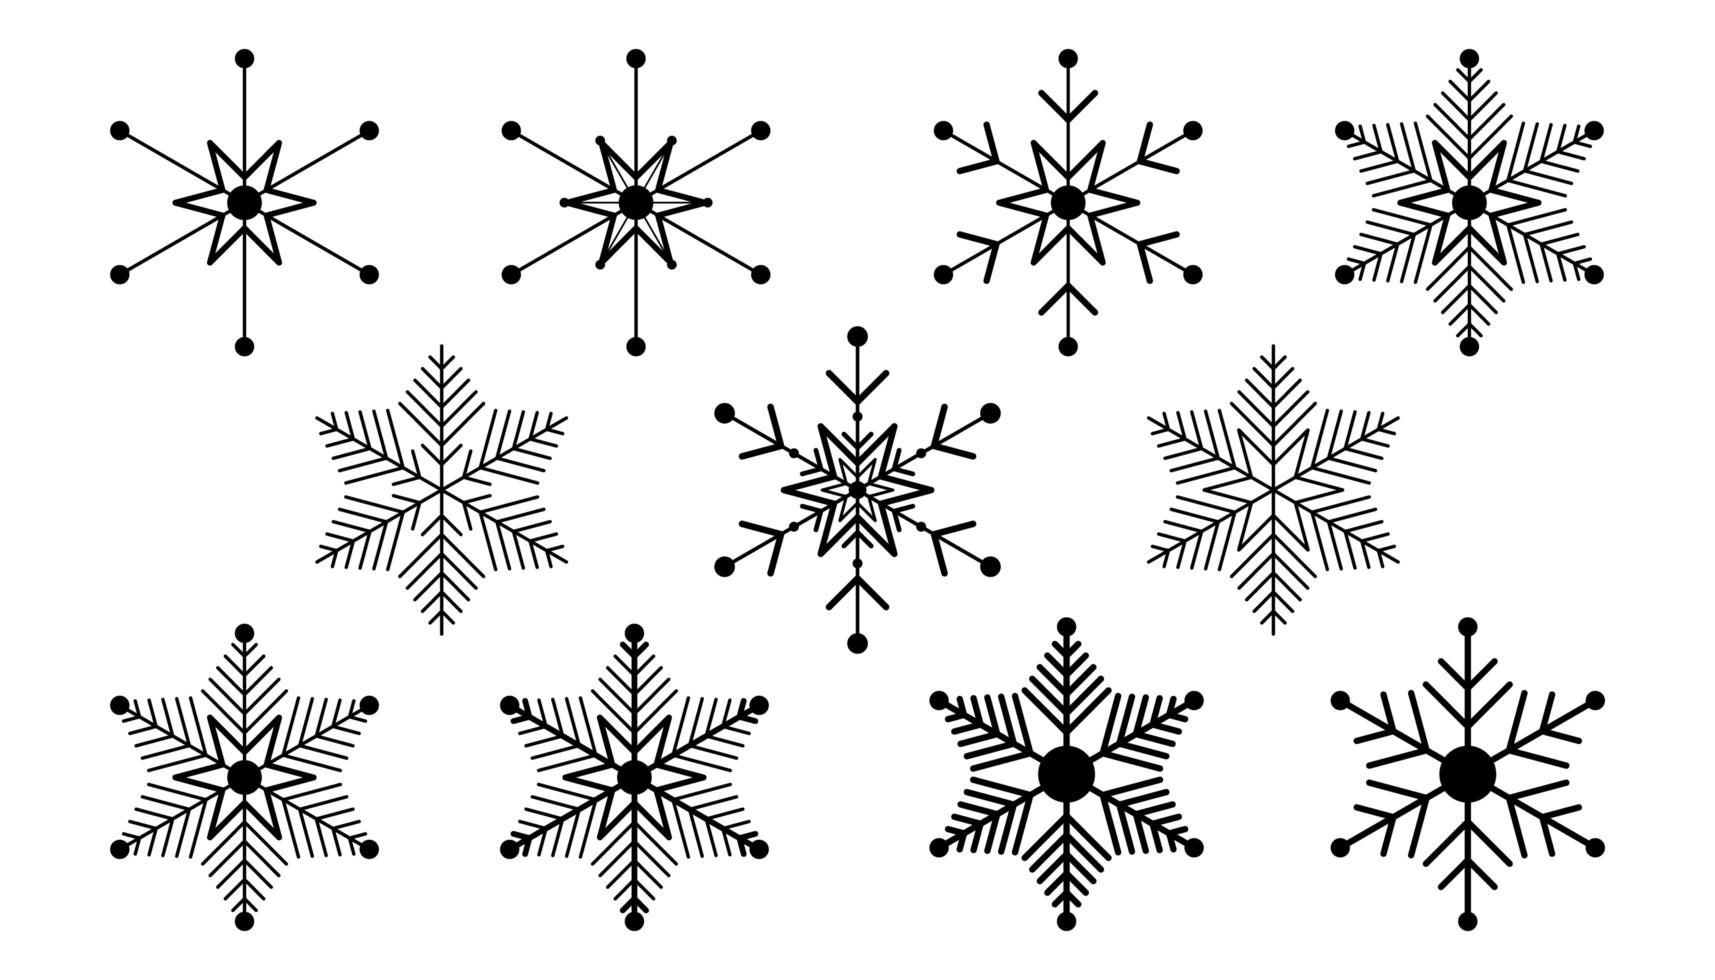 Vektor große Menge der schwarzen Schneeflocke Design-Elemente auf weißem Hintergrund. verschiedene Designs.